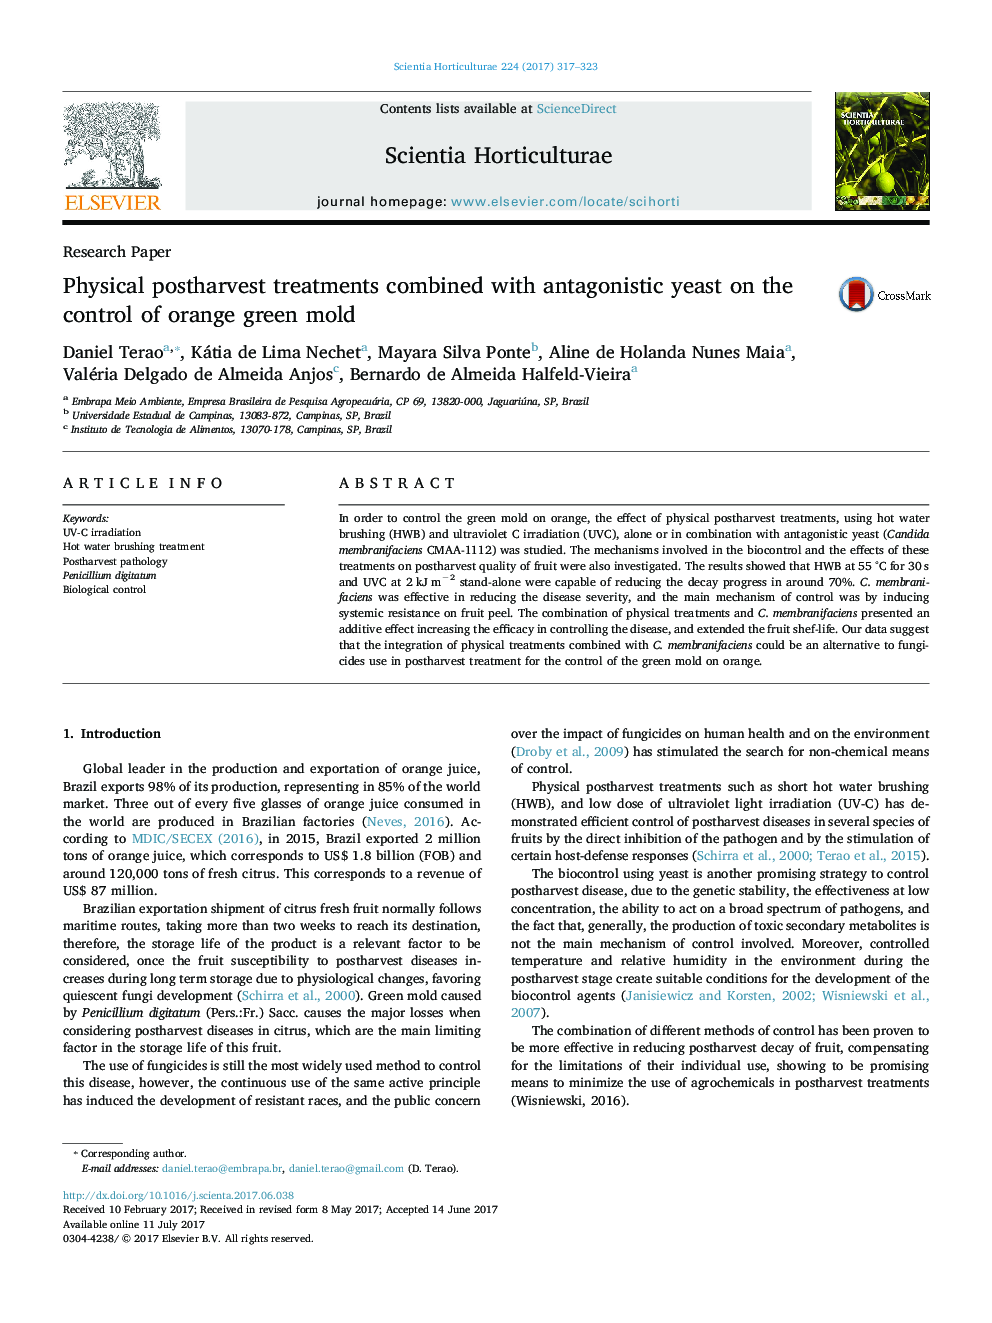 مقاله پژوهشی درمانهای بعد از رسیدگی فیزیکی همراه با مخمر آنتاگونیستی در کنترل قالب سبز نارنجی 